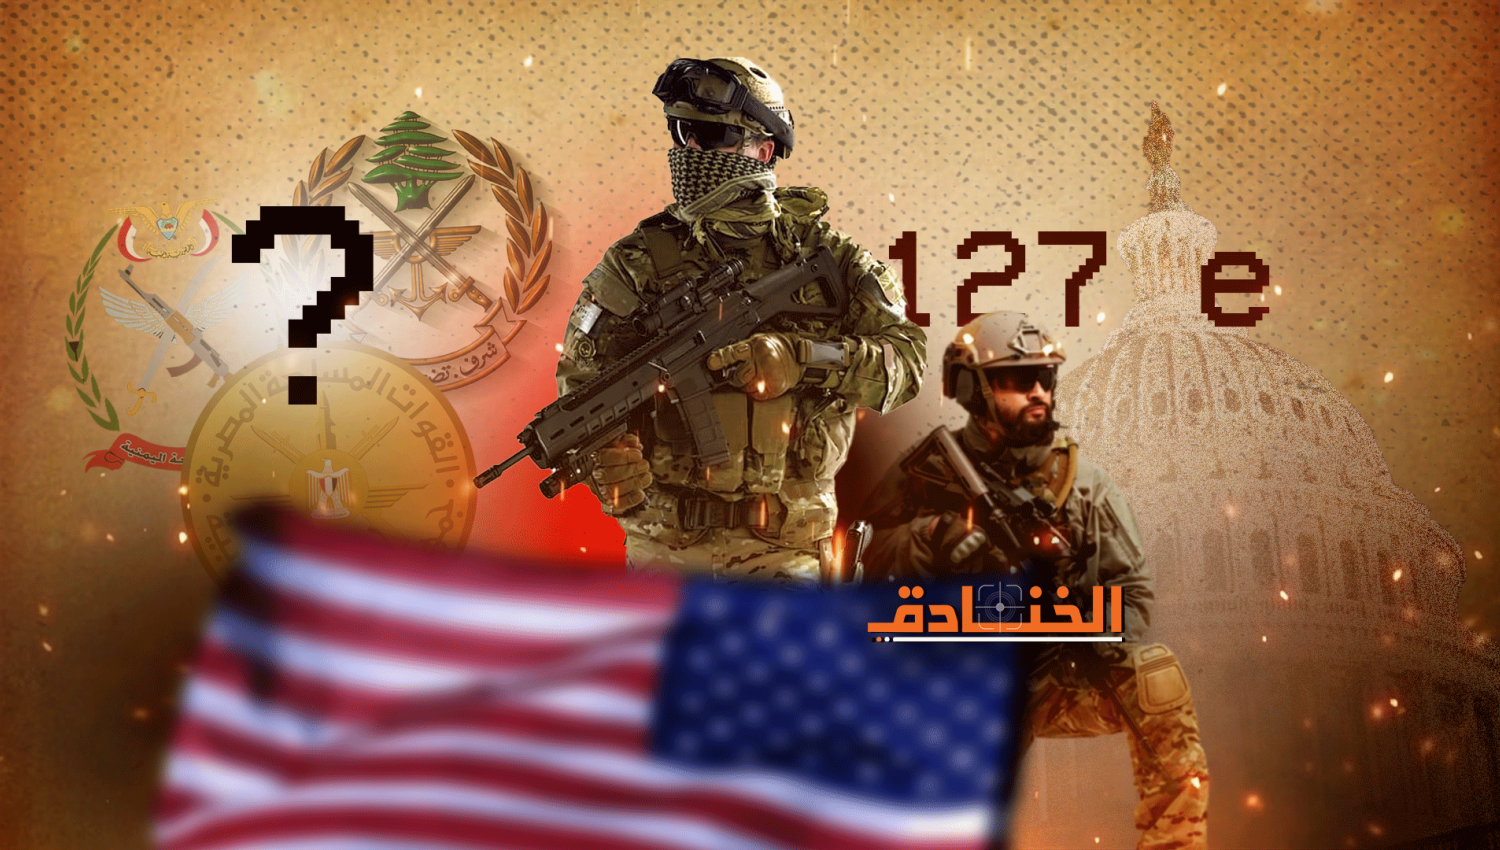 برنامج 127e السري: وحدات أميركية في الجيش اللبناني!